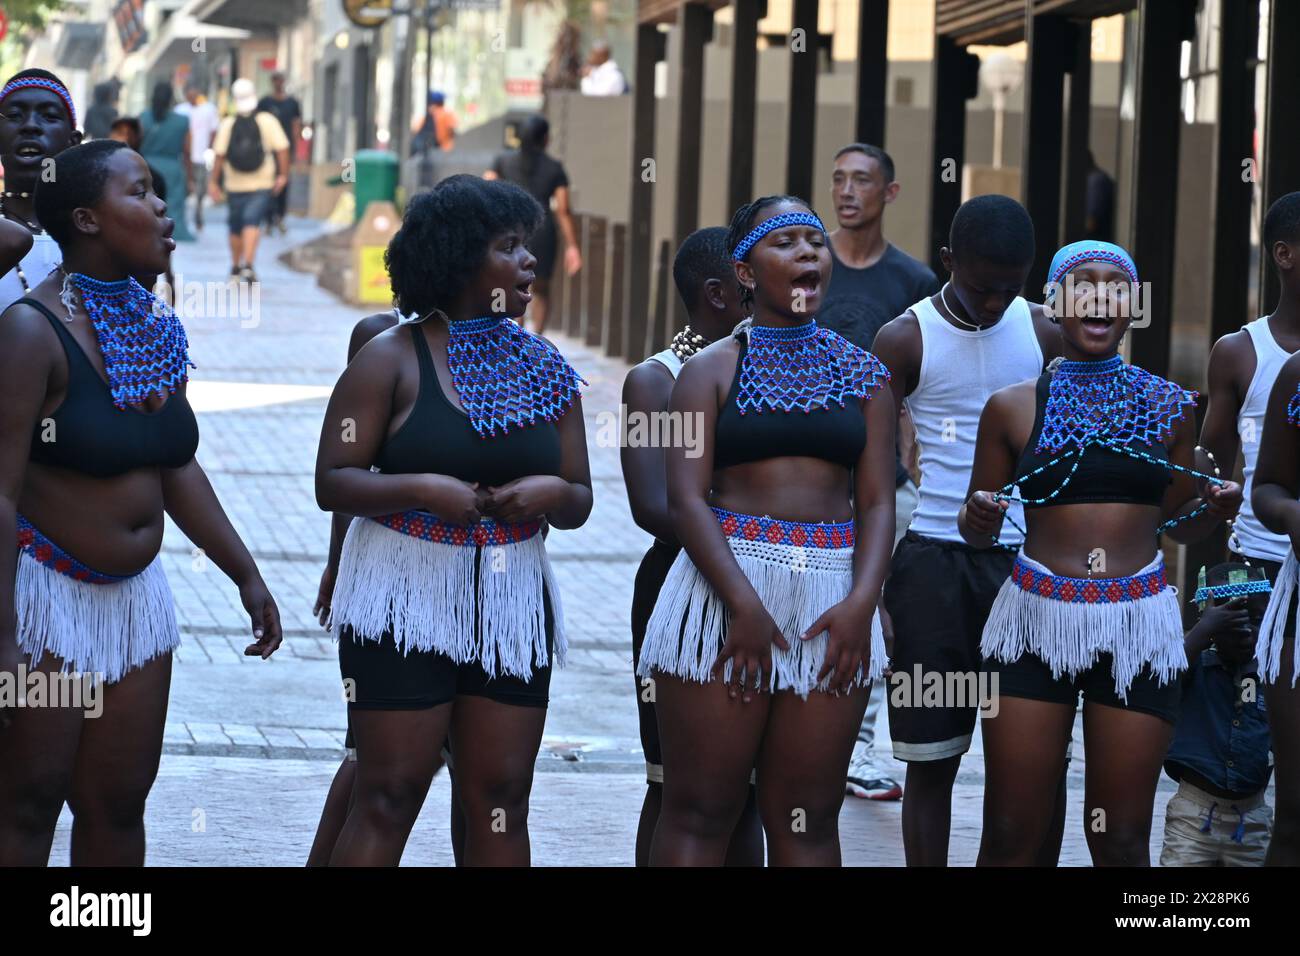 Gruppo di ragazzi e ragazze di colore in costume locale che eseguono una tipica danza africana nel centro di città del Capo, in Sudafrica Foto Stock